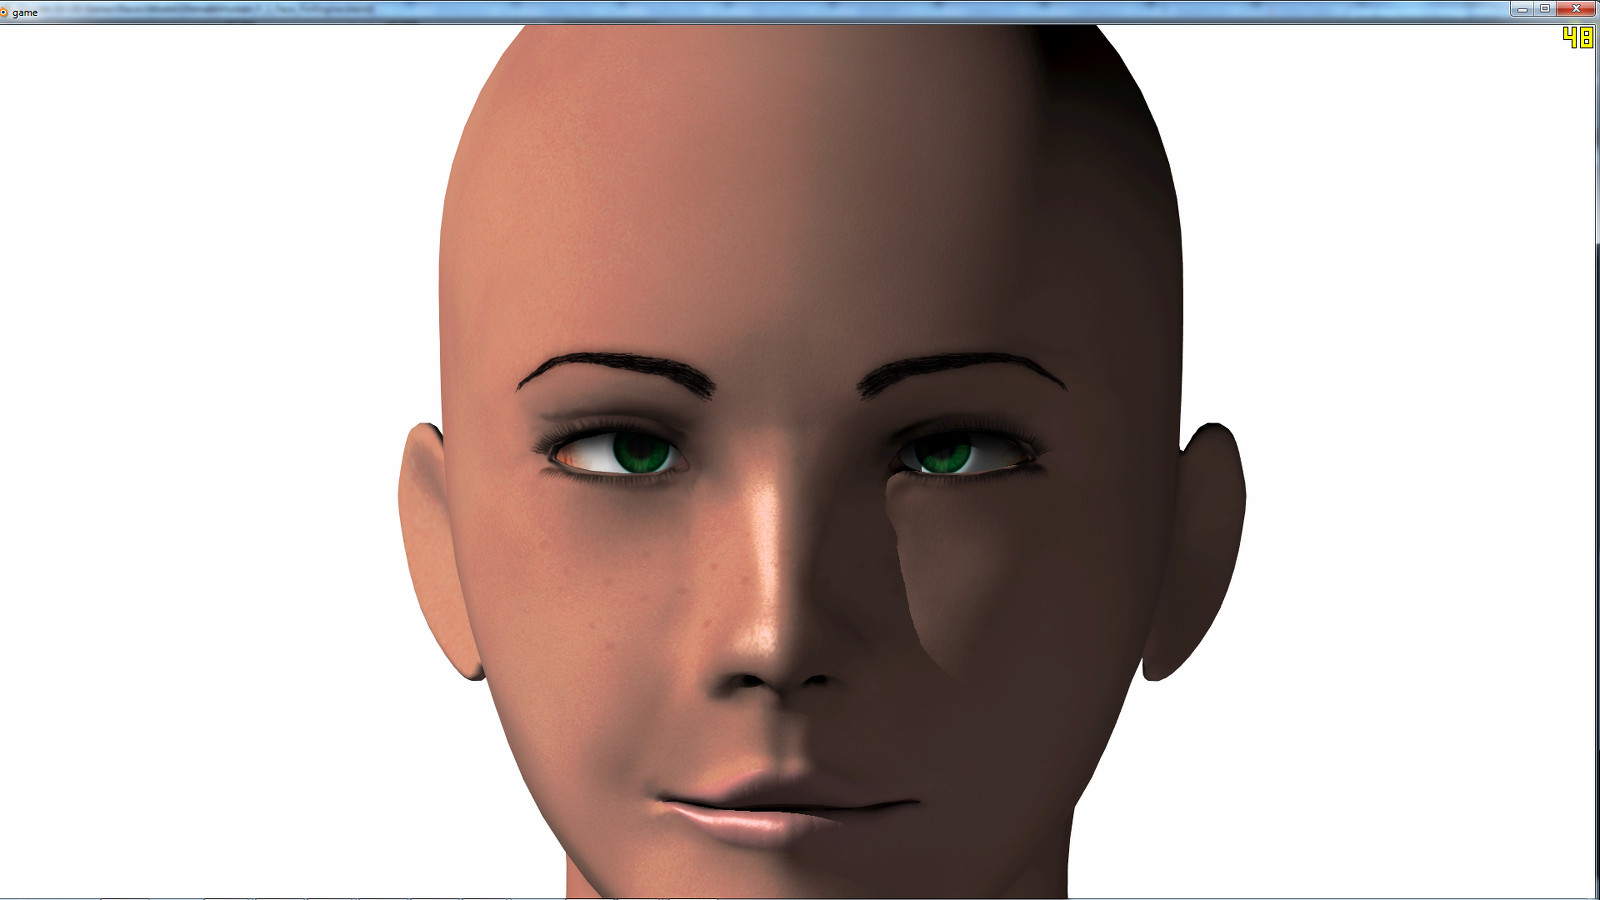 human face template